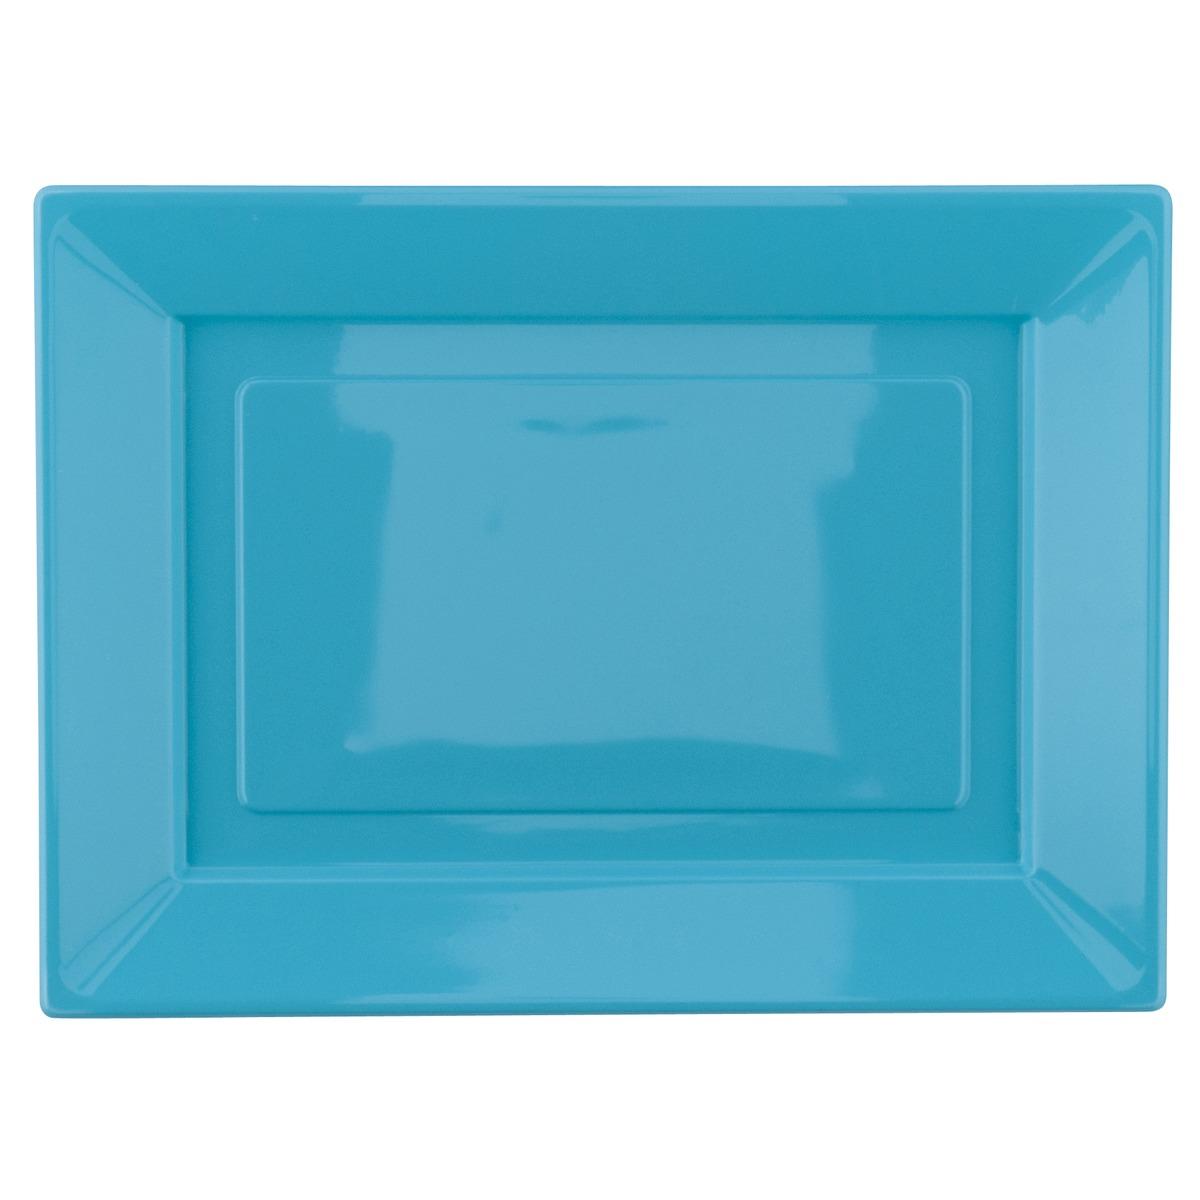 Lot de 2 plateaux en plastique - 28 x 38 cm - Bleu turquoise